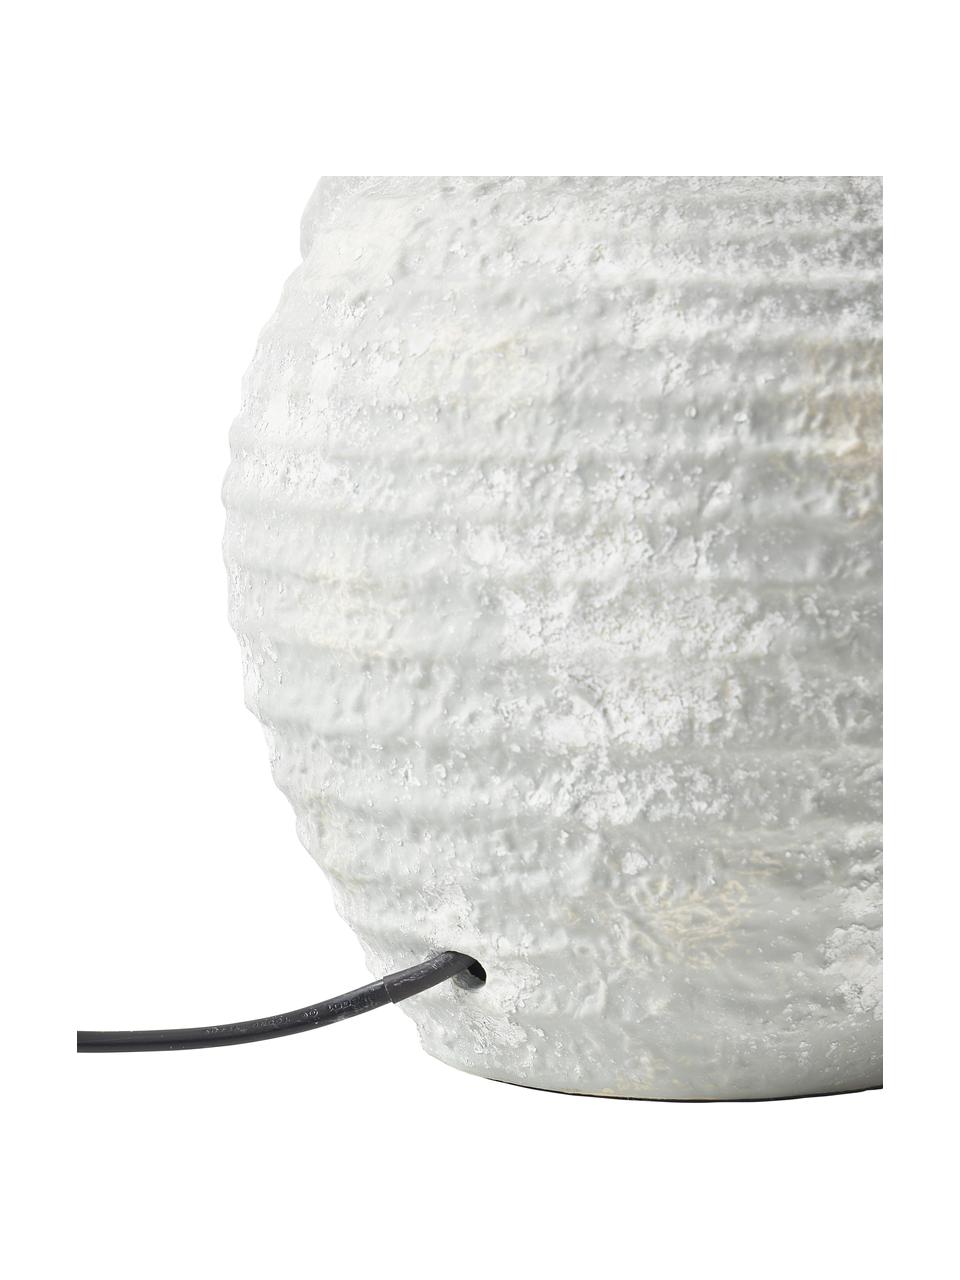 Grote tafellamp Tiva met keramische voet, Lampenkap: textiel (100% polyester), Lampvoet: keramiek, Wit, grijs, Ø 35 x H 55 cm